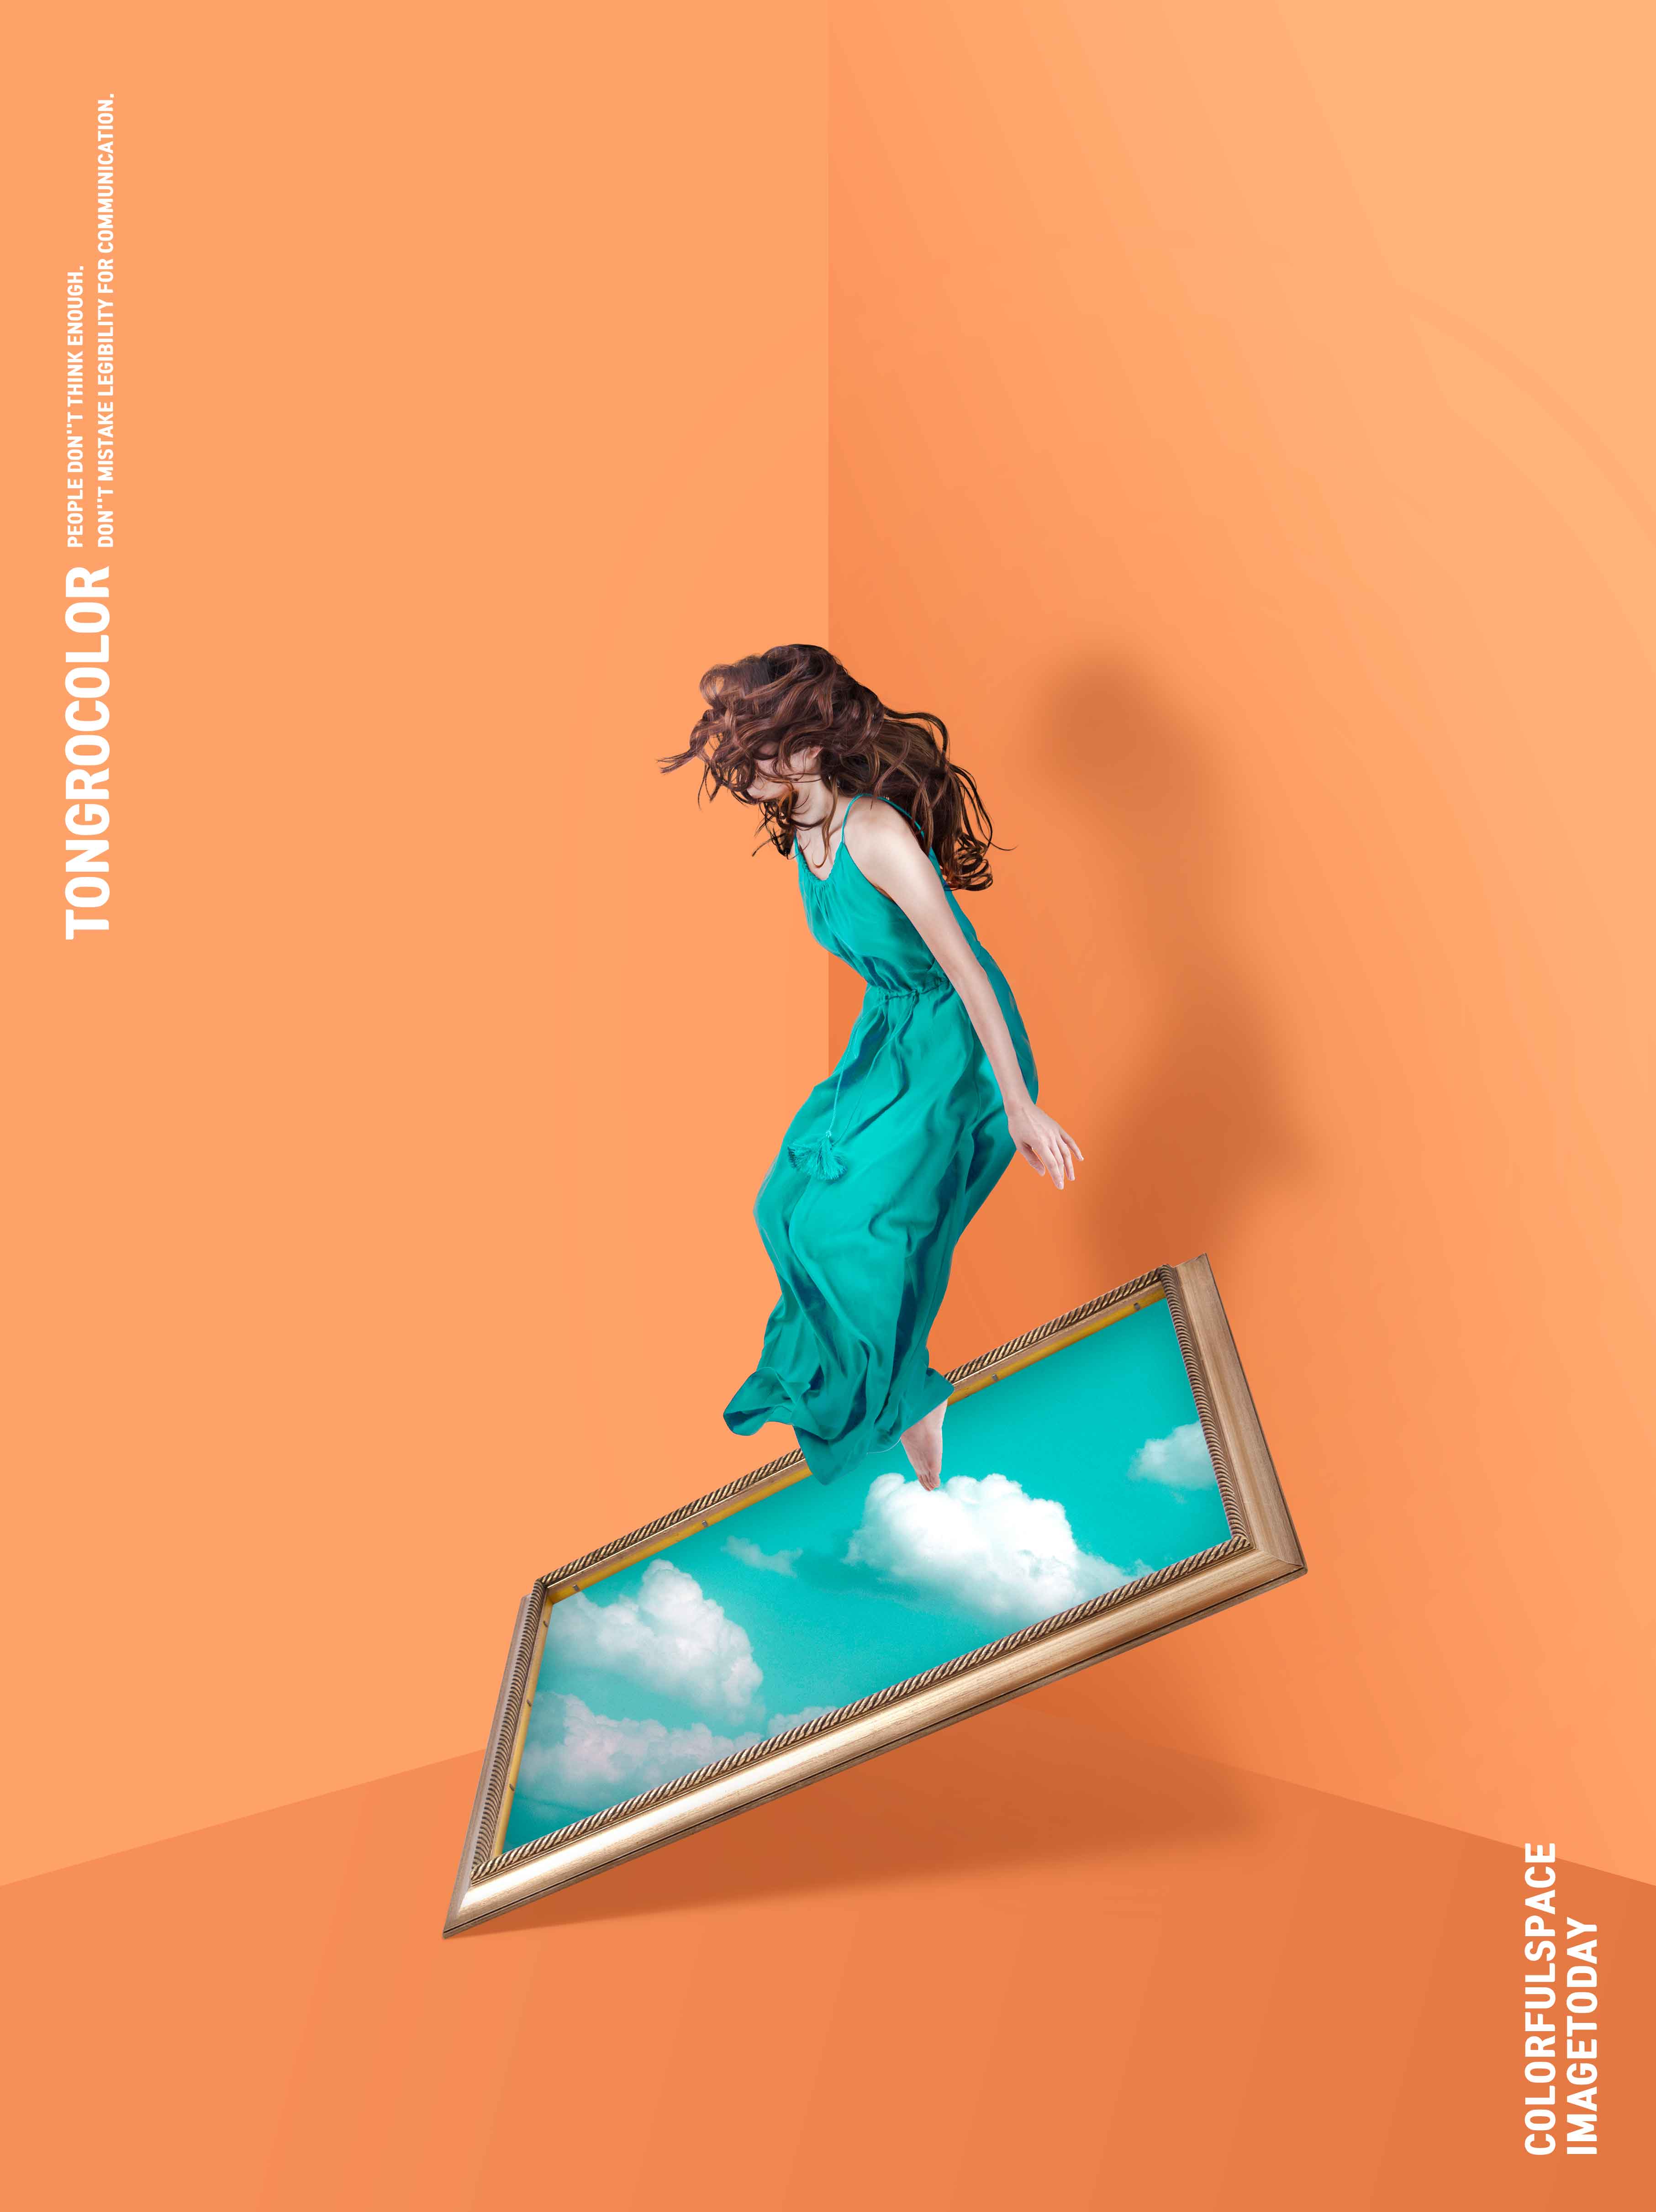 长裙美女&天空作品画抽象空间主题海报PSD素材16图库精选素材插图